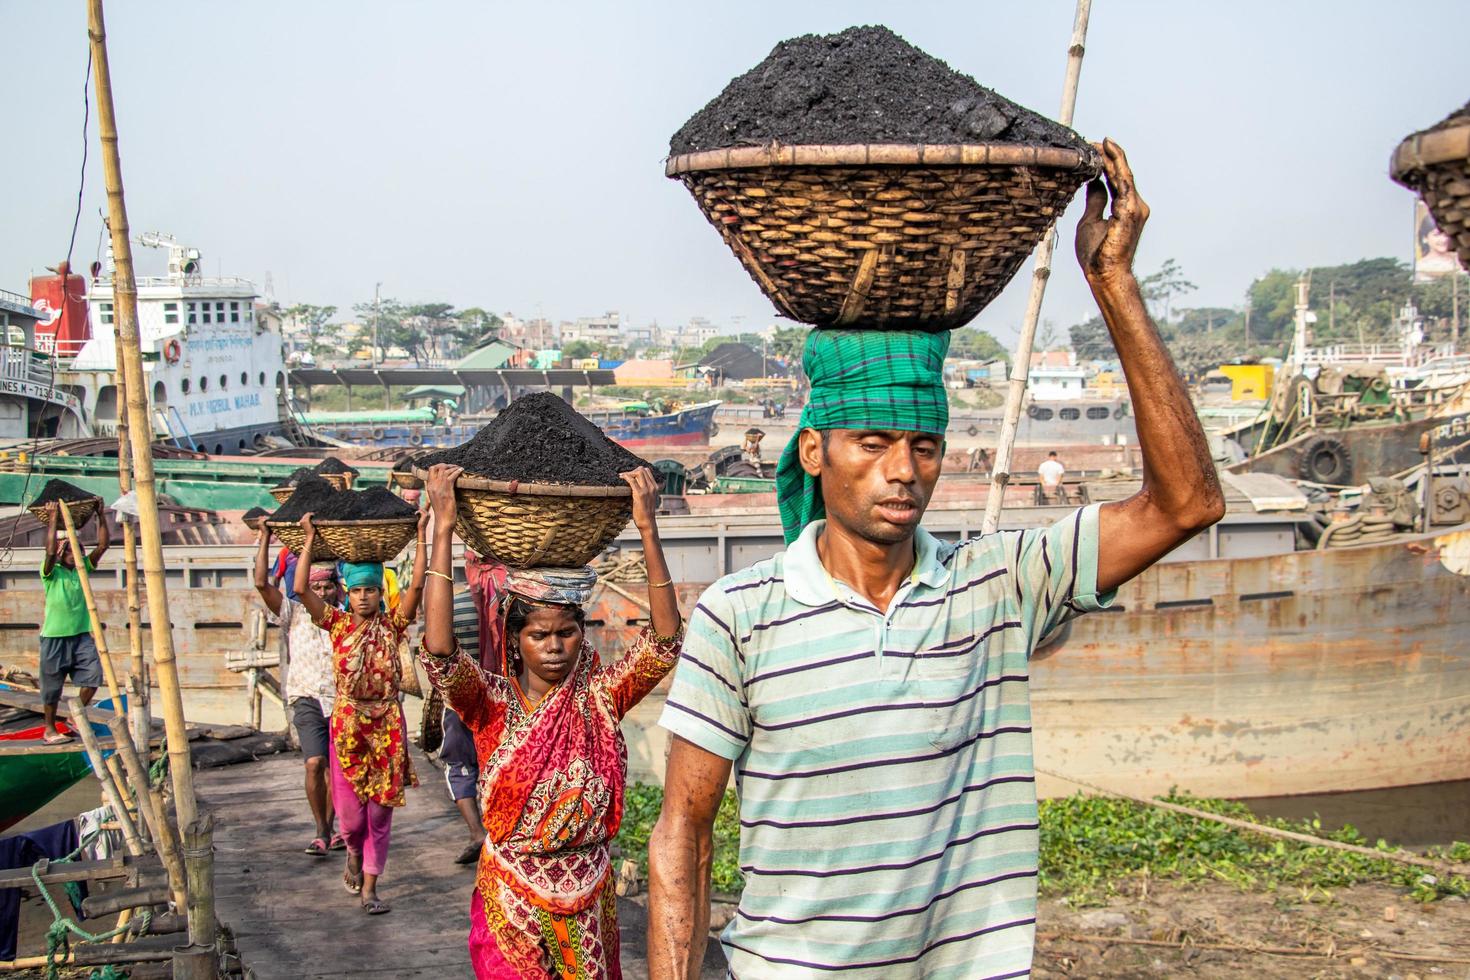 amen bazar, dhaka, bangladesh, 2018 - mannen en vrouwen die hard werken om geld te verdienen. foto